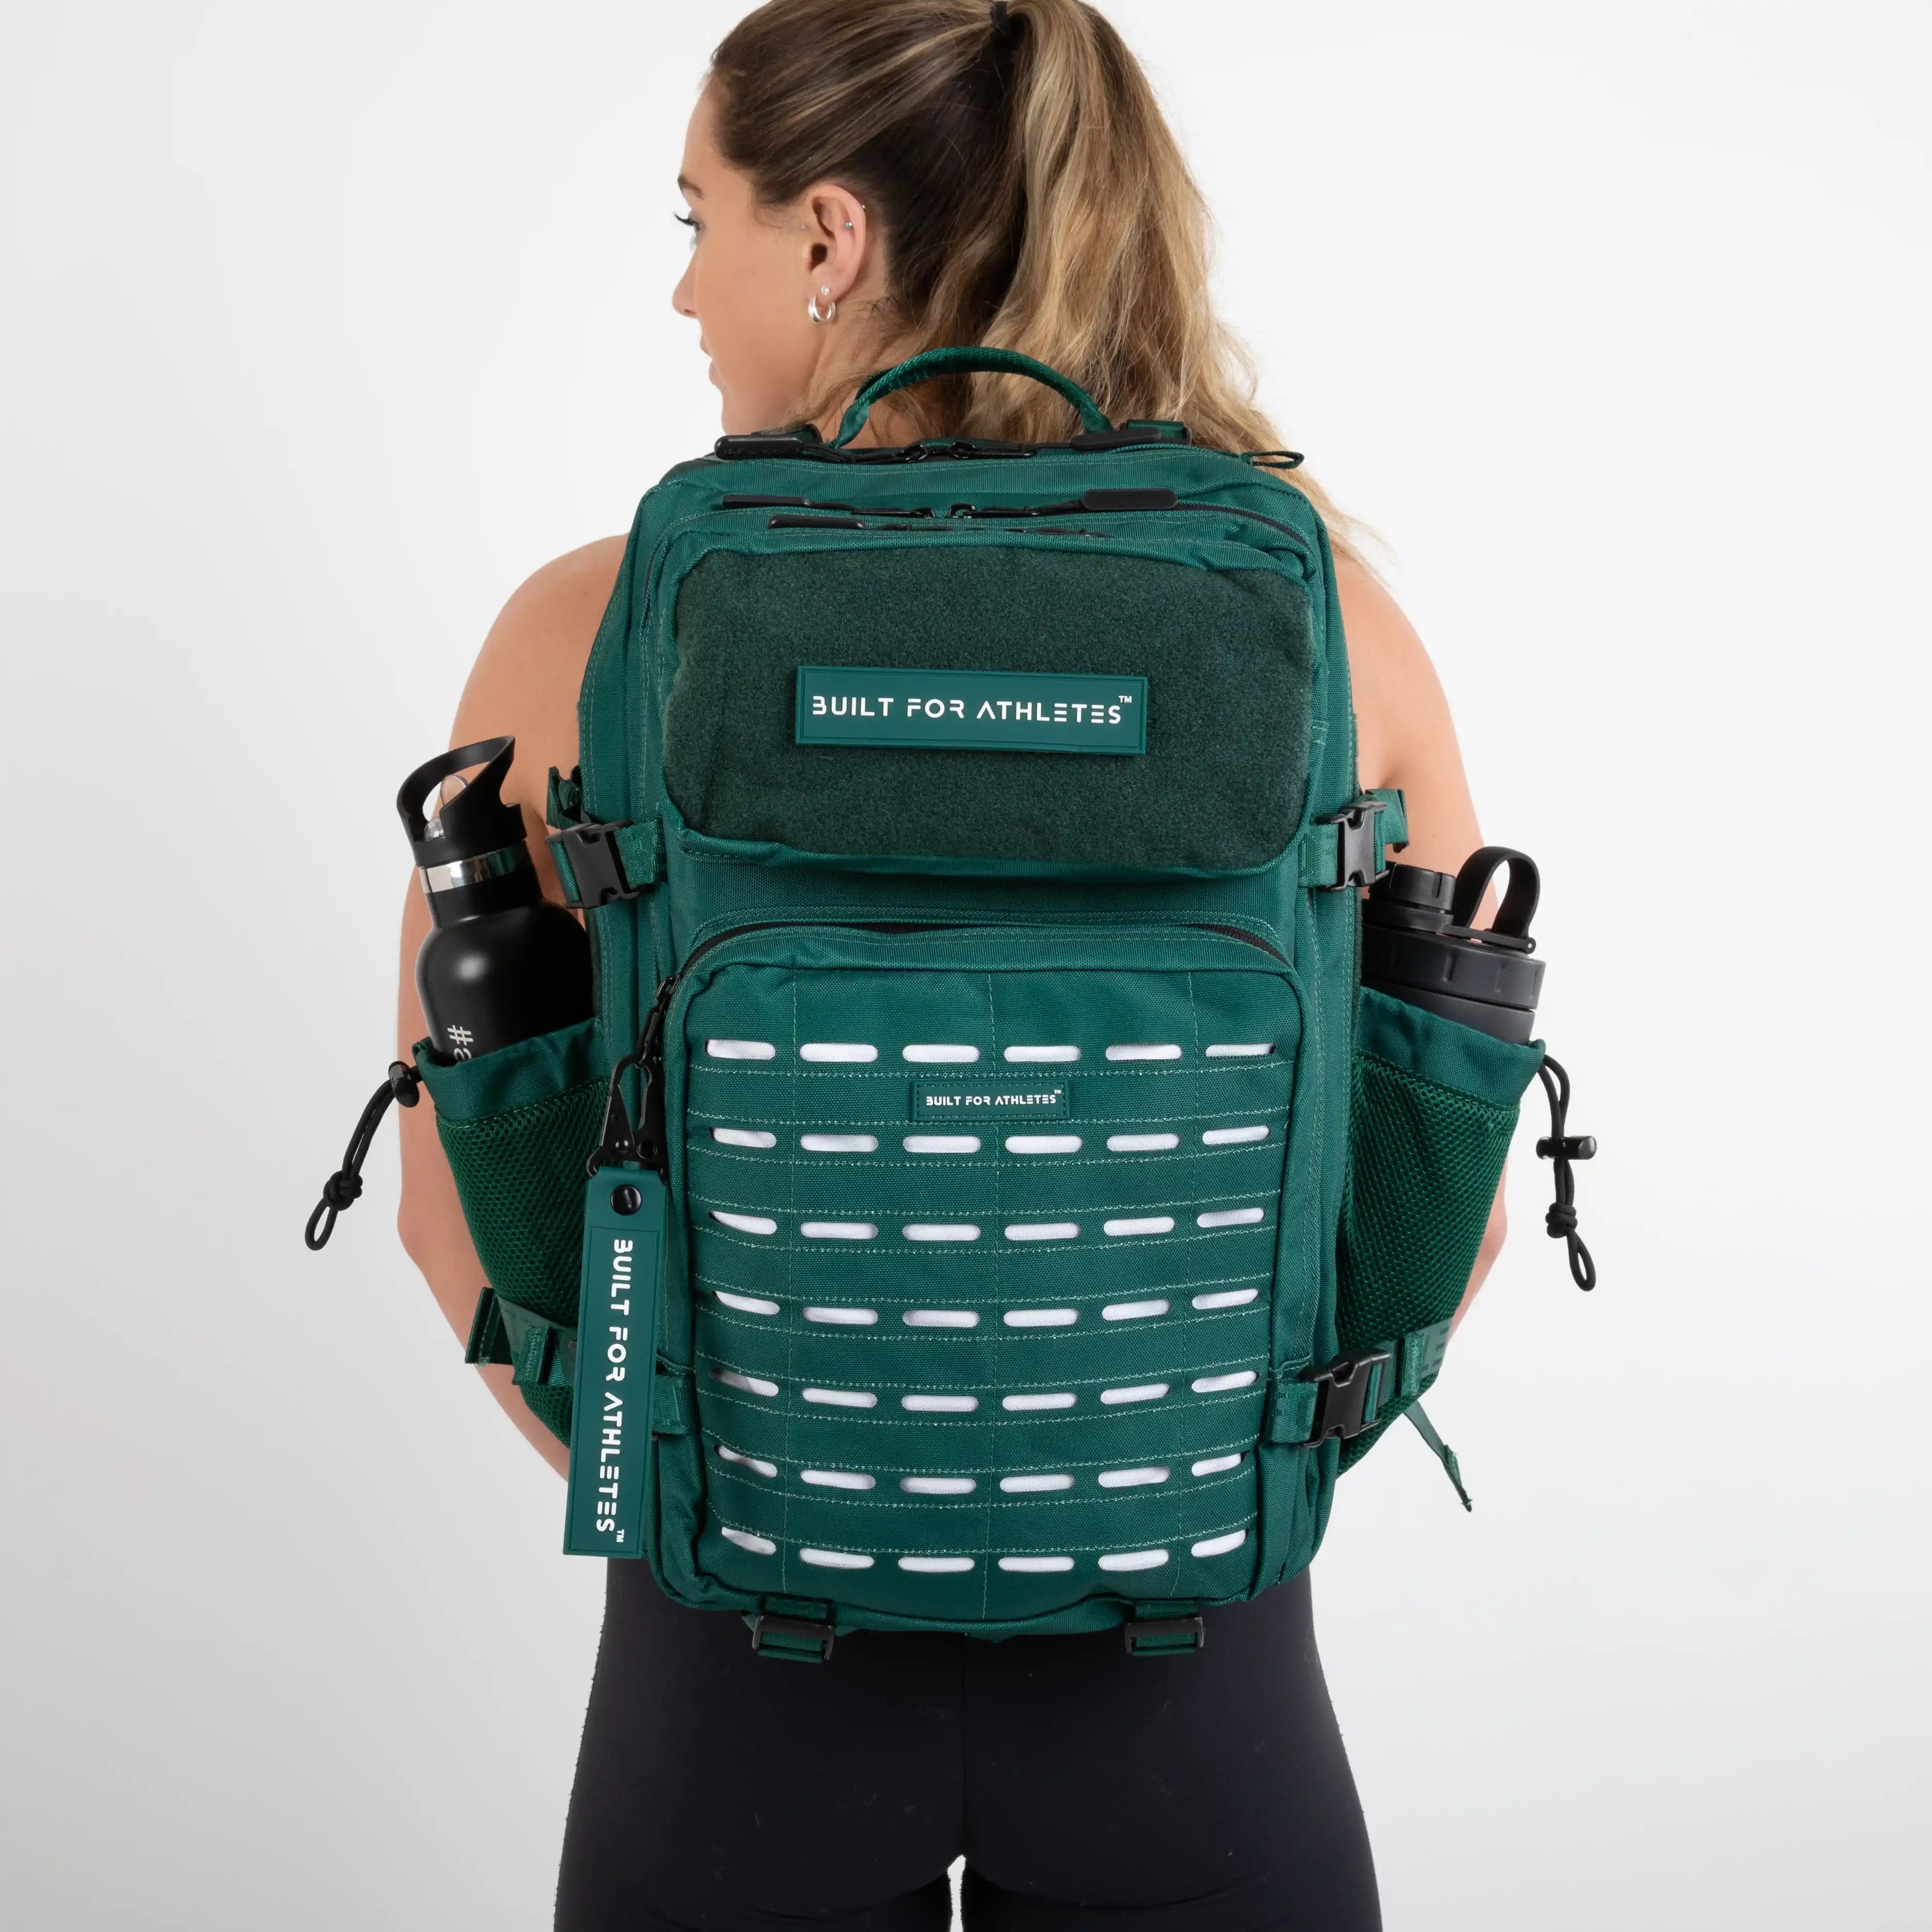 Built for Athletes Backpacks Large Forest Green Gym Backpack